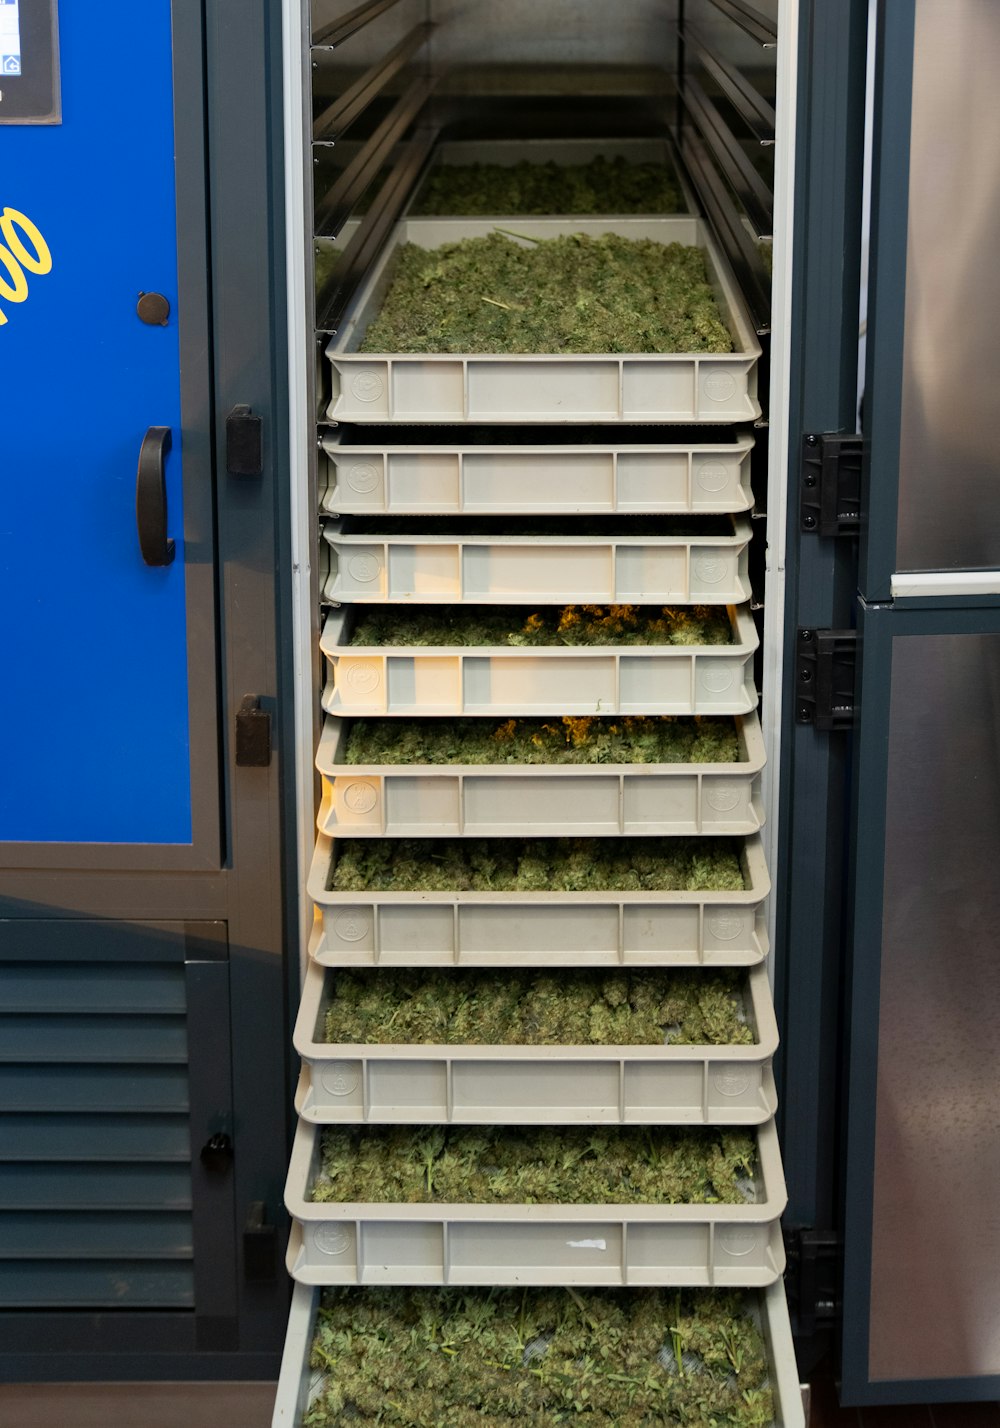 Un refrigerador lleno de muchas cosas verdes